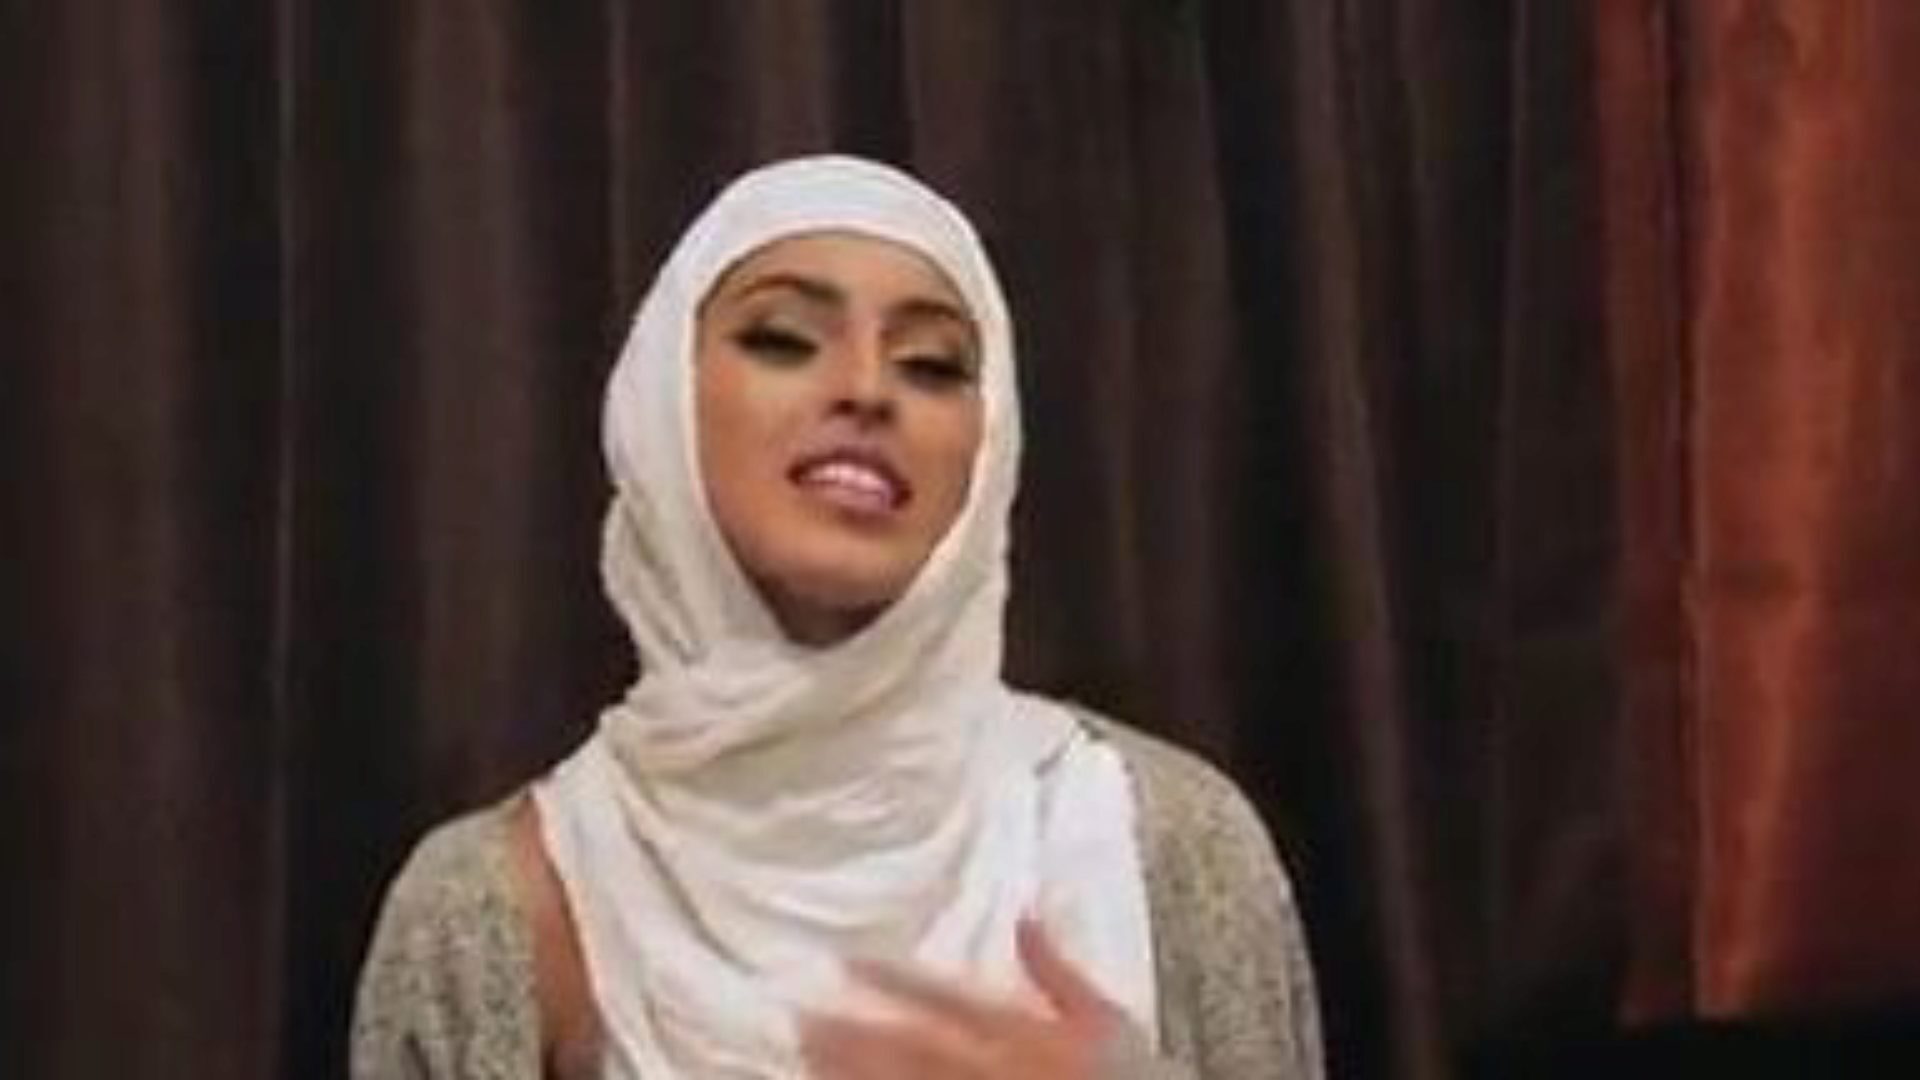 genert uerfarne piger knepper i deres hijabs: gratis porno 5e se genert uerfarne piger knepper i deres hijabs episode på xhamster - det ultimative arkiv med gratis xnxx gratis & bel ami hardcore porno tube vids